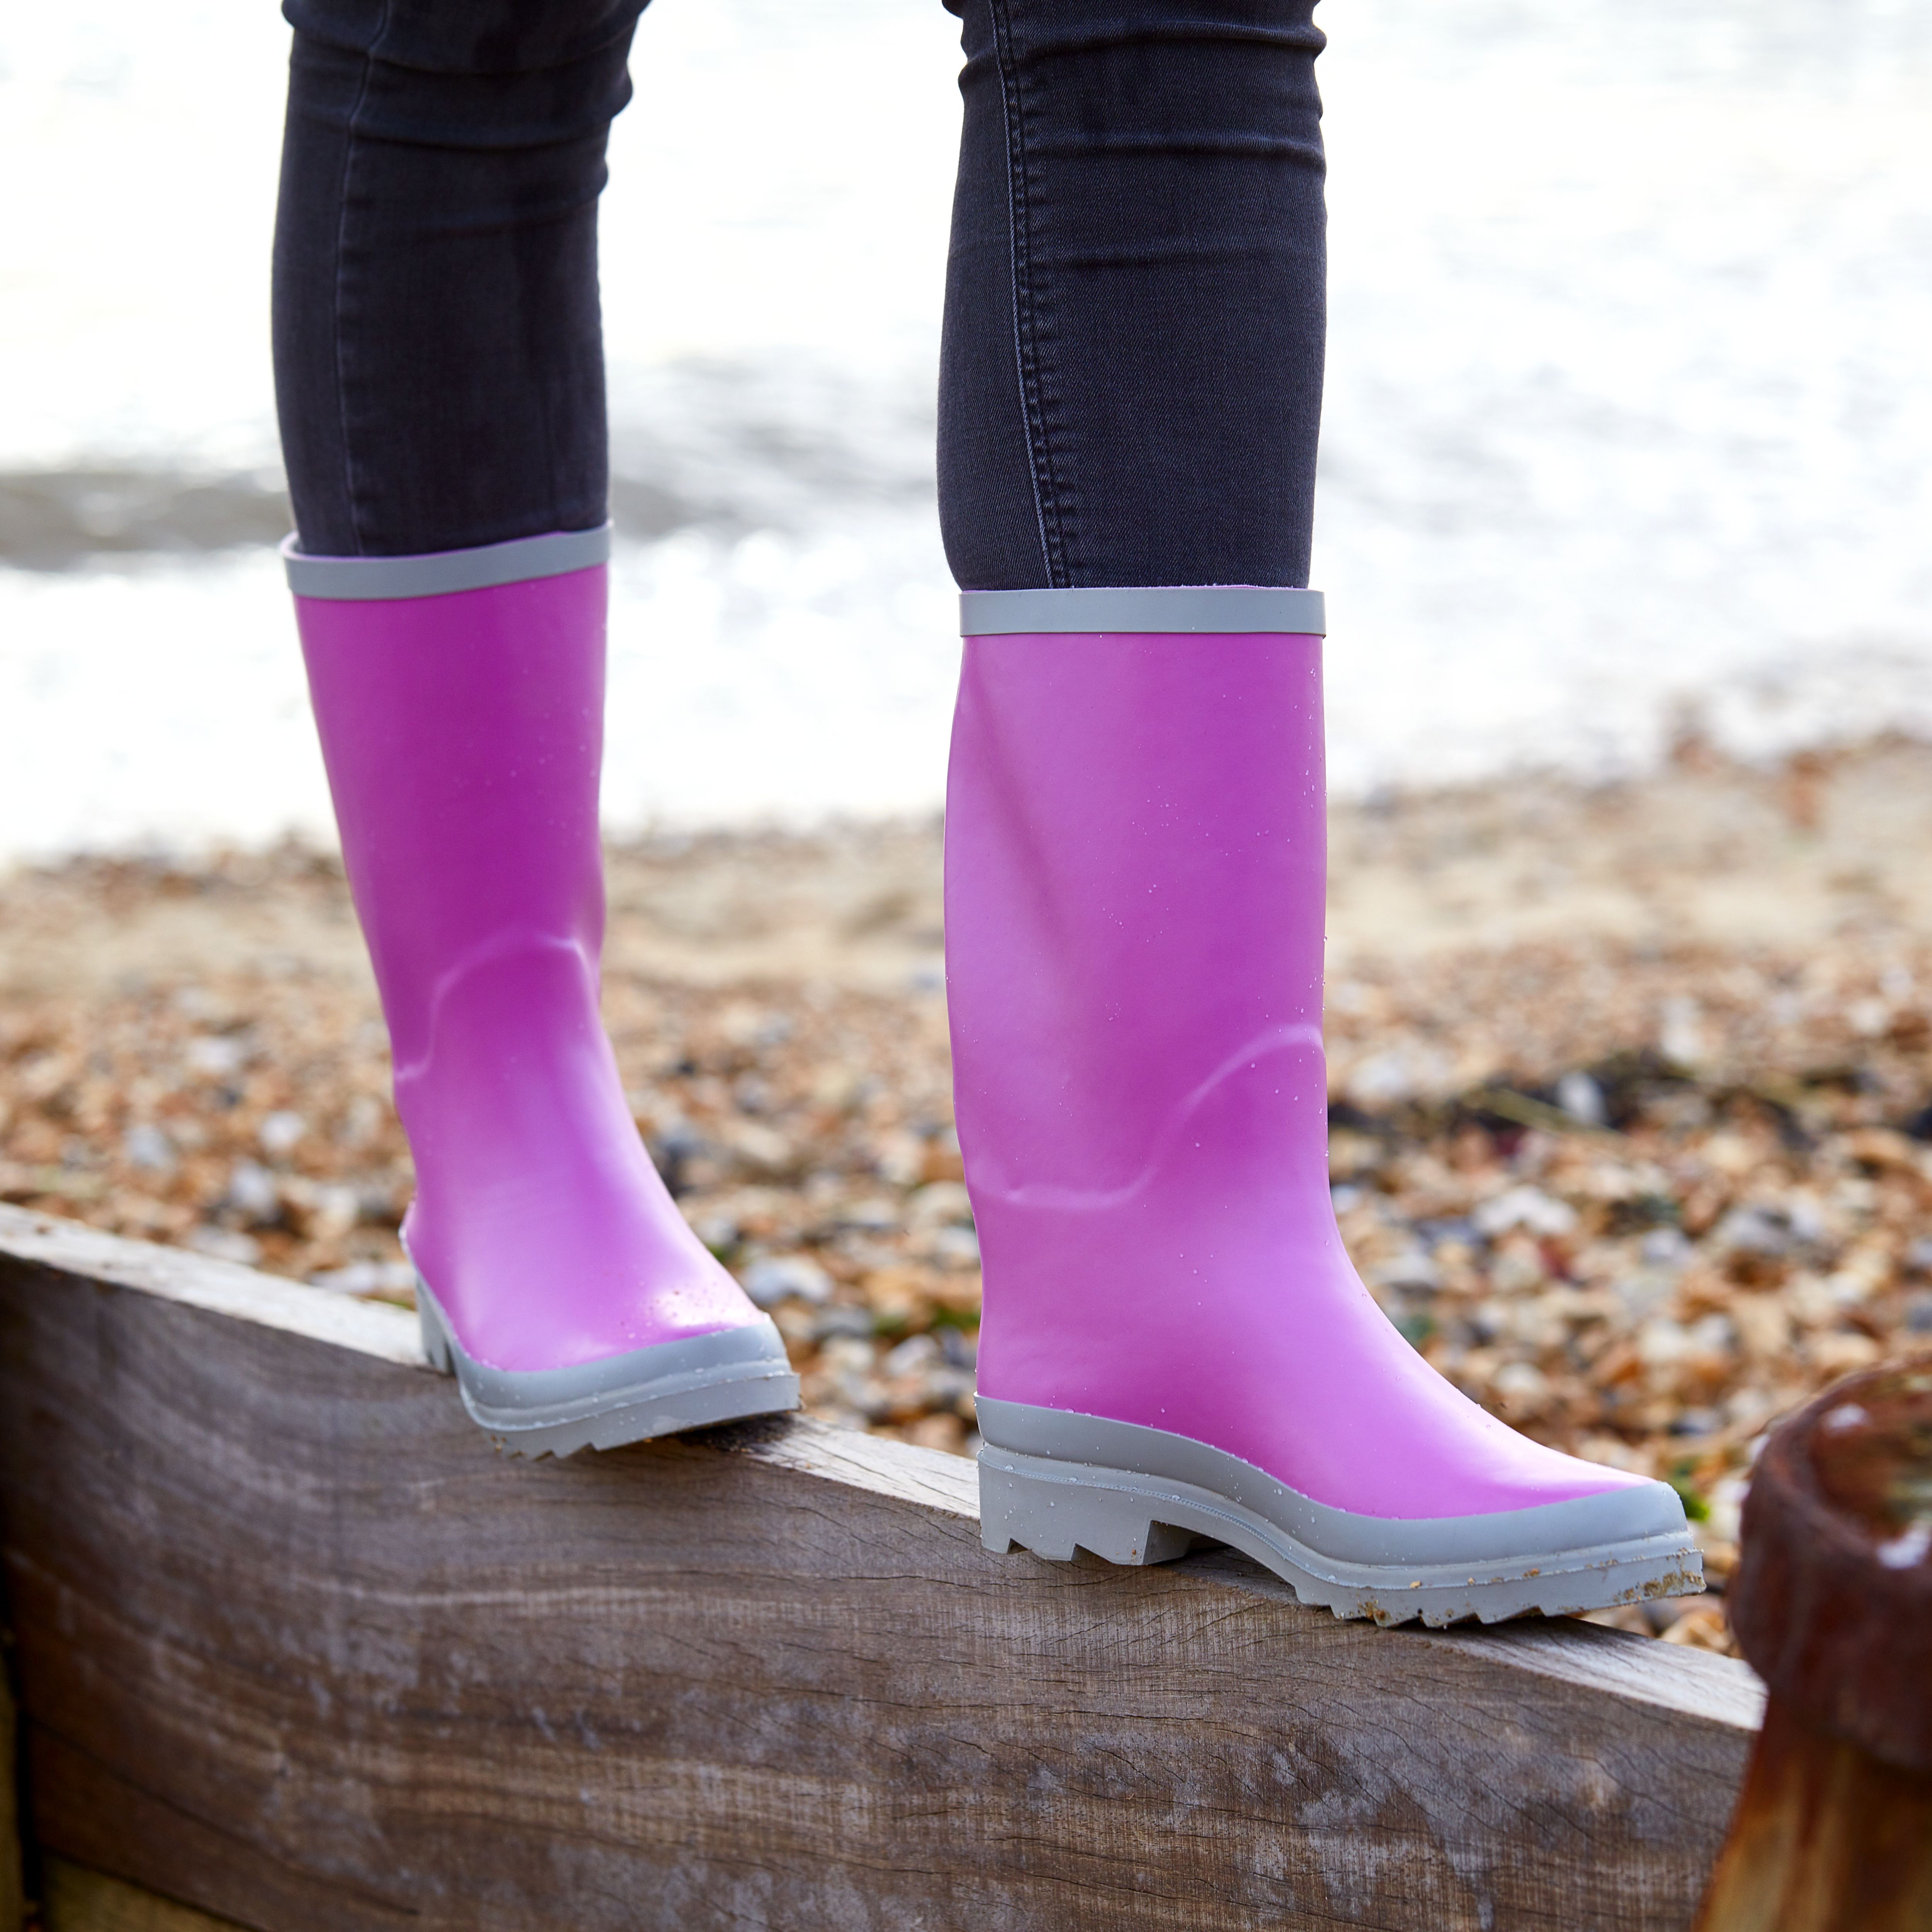 Verve Purple Wellington boots, Size 4